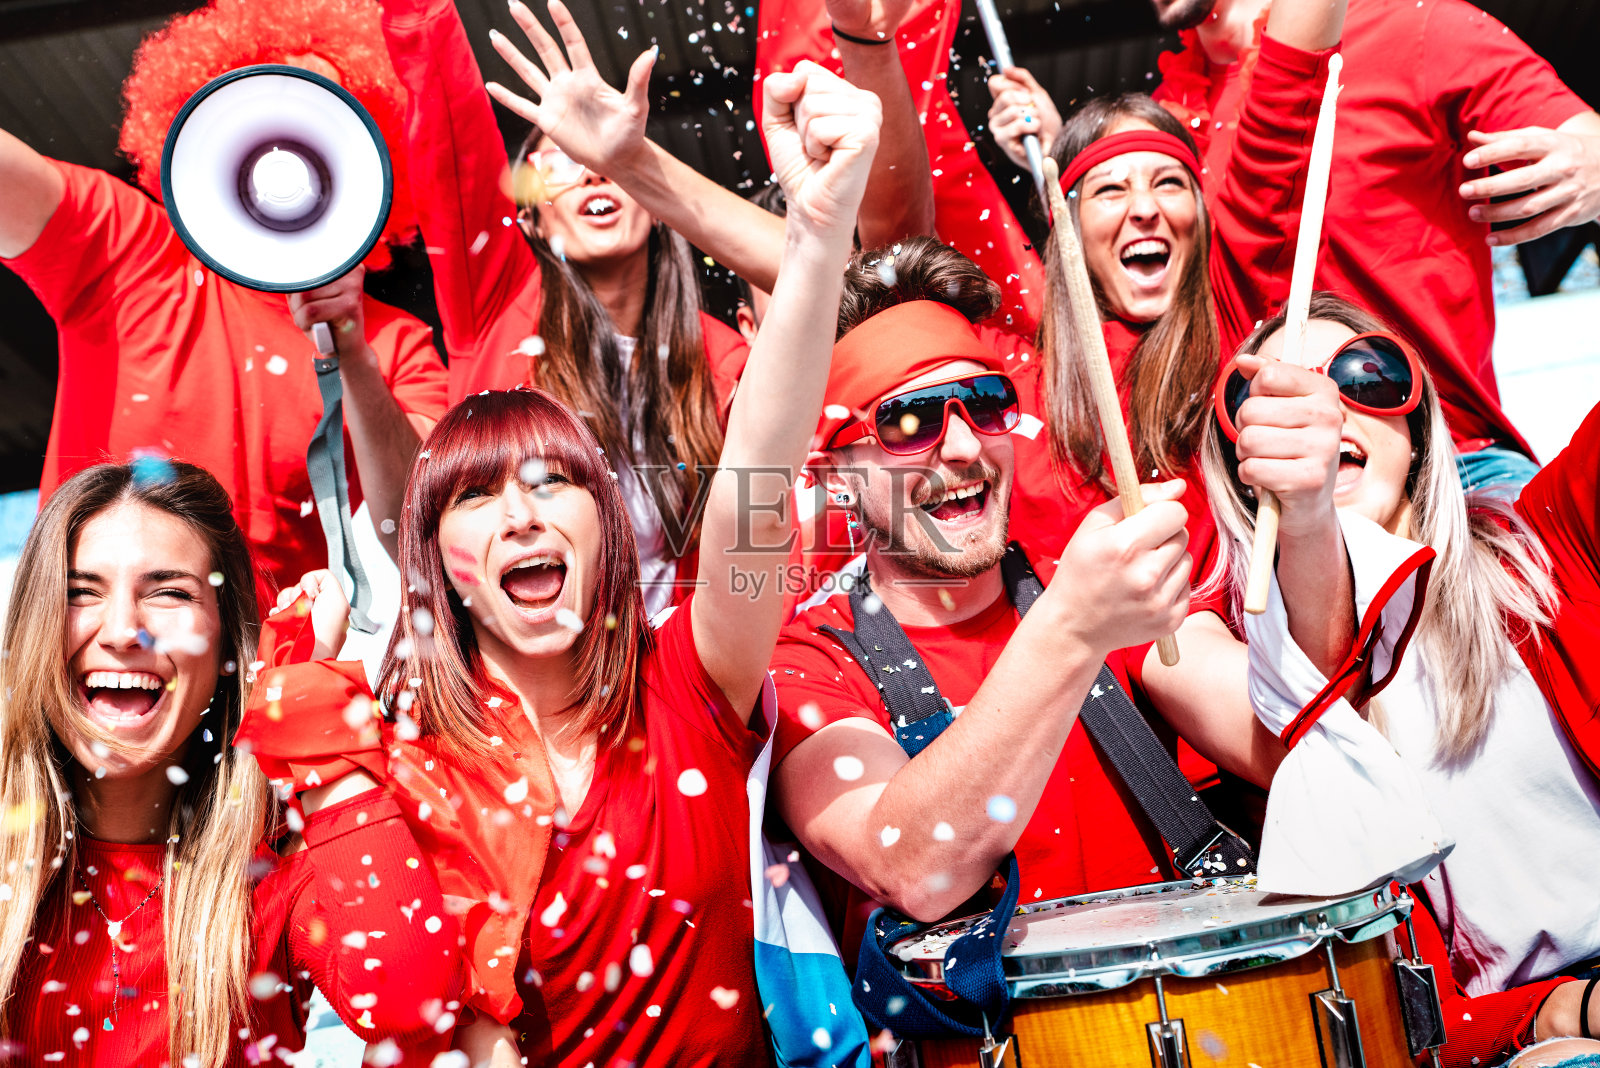 球迷欢呼与五彩纸屑观看足球比赛杯在体育场论坛-年轻人组与红色t恤兴奋的乐趣体育世界锦标赛-明亮生动的滤镜照片摄影图片